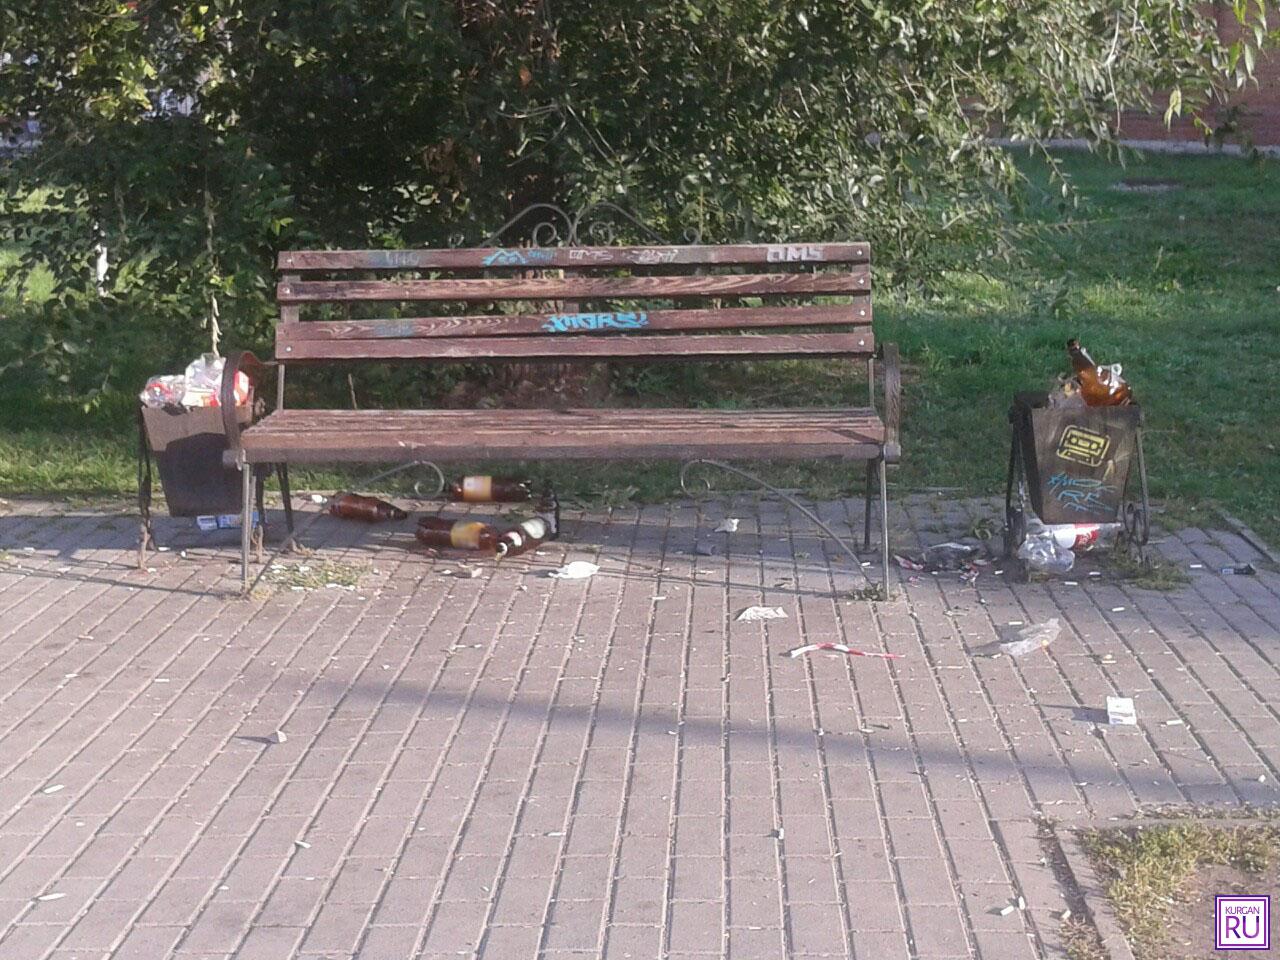 Фото из группы «Инцидент/Курган» соцсети «ВКонтакте».